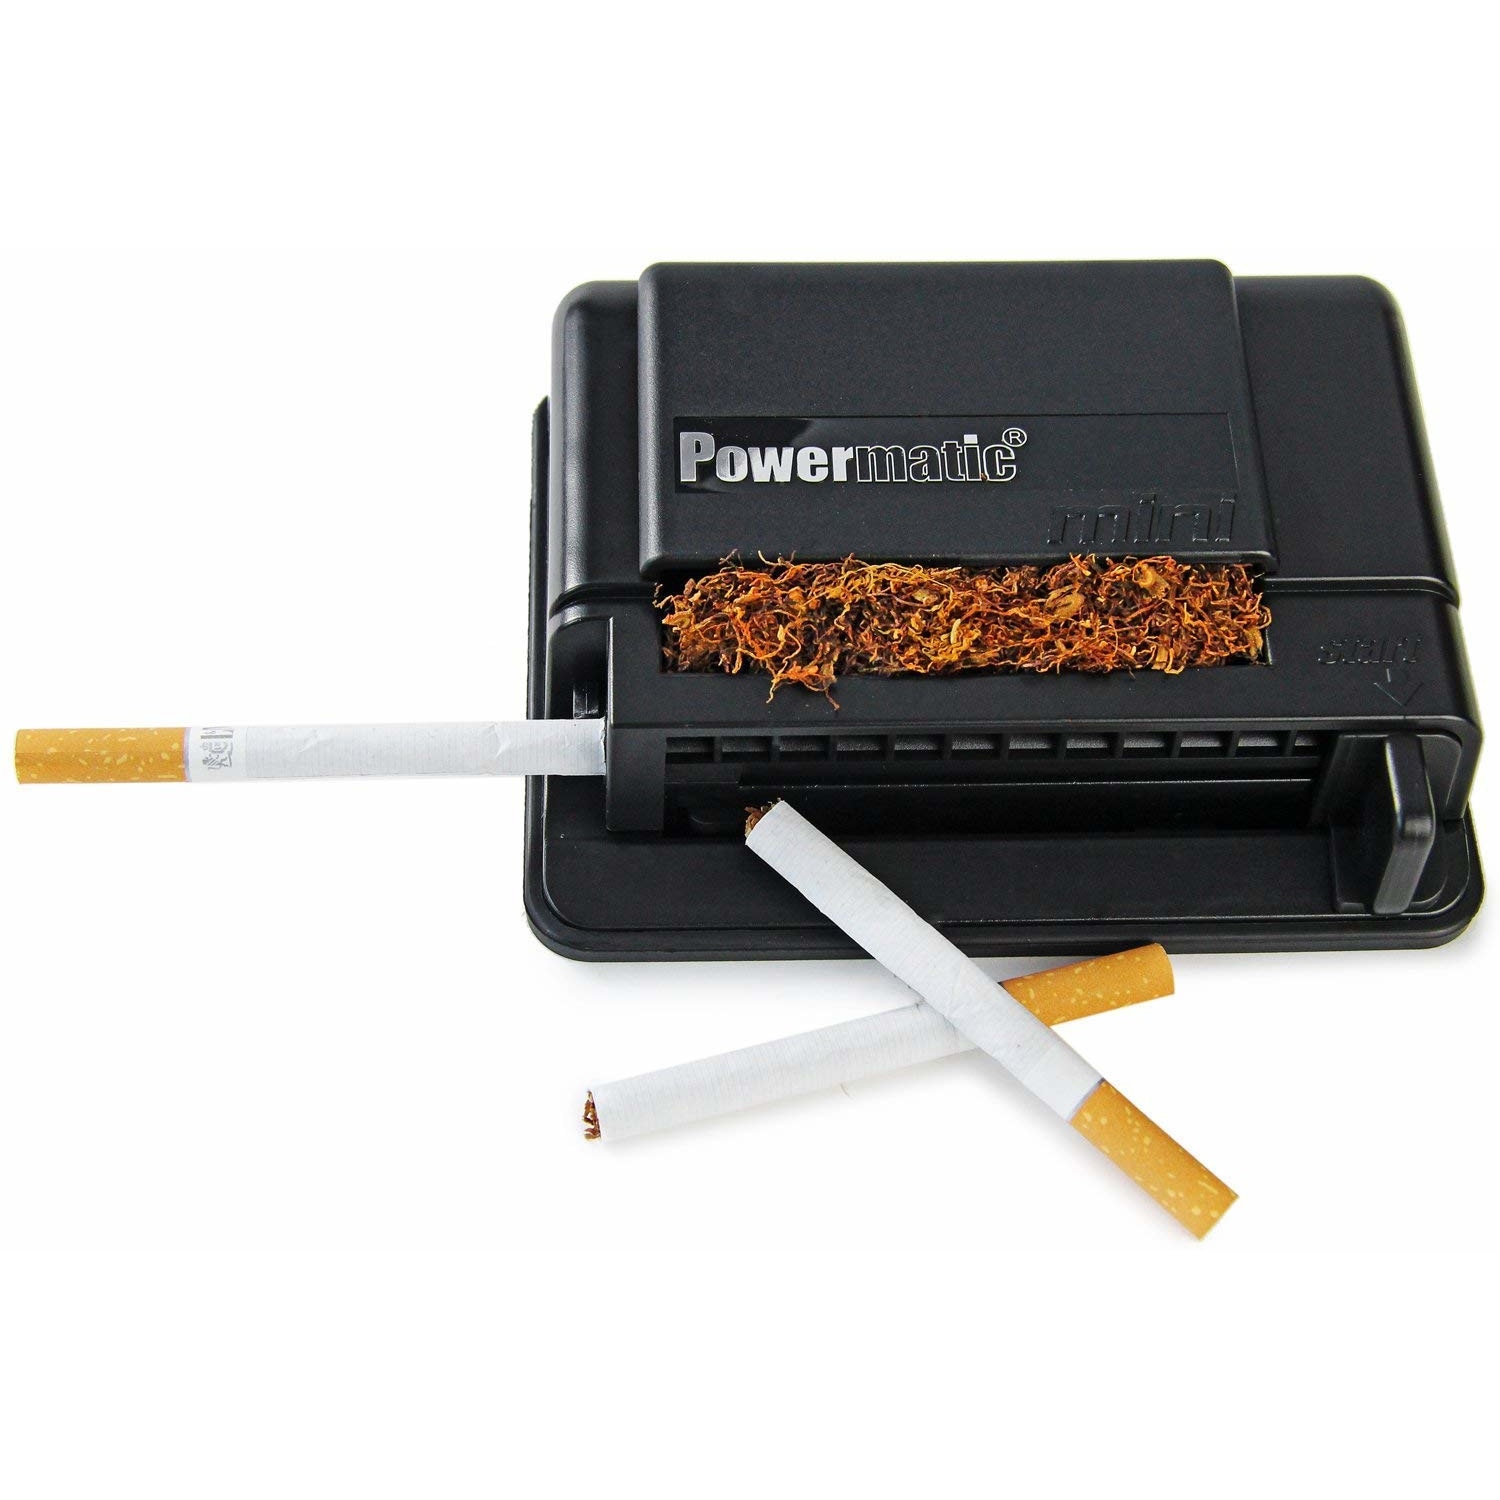 Машинка для набивки сигаретных гильз 6.5. Powermatic Mini машинка для сигарет. Машинка для набивки сигарет Powermatic Mini. Машинки для набивки гильз Powermatic. Powermatic для набивки сигарет.